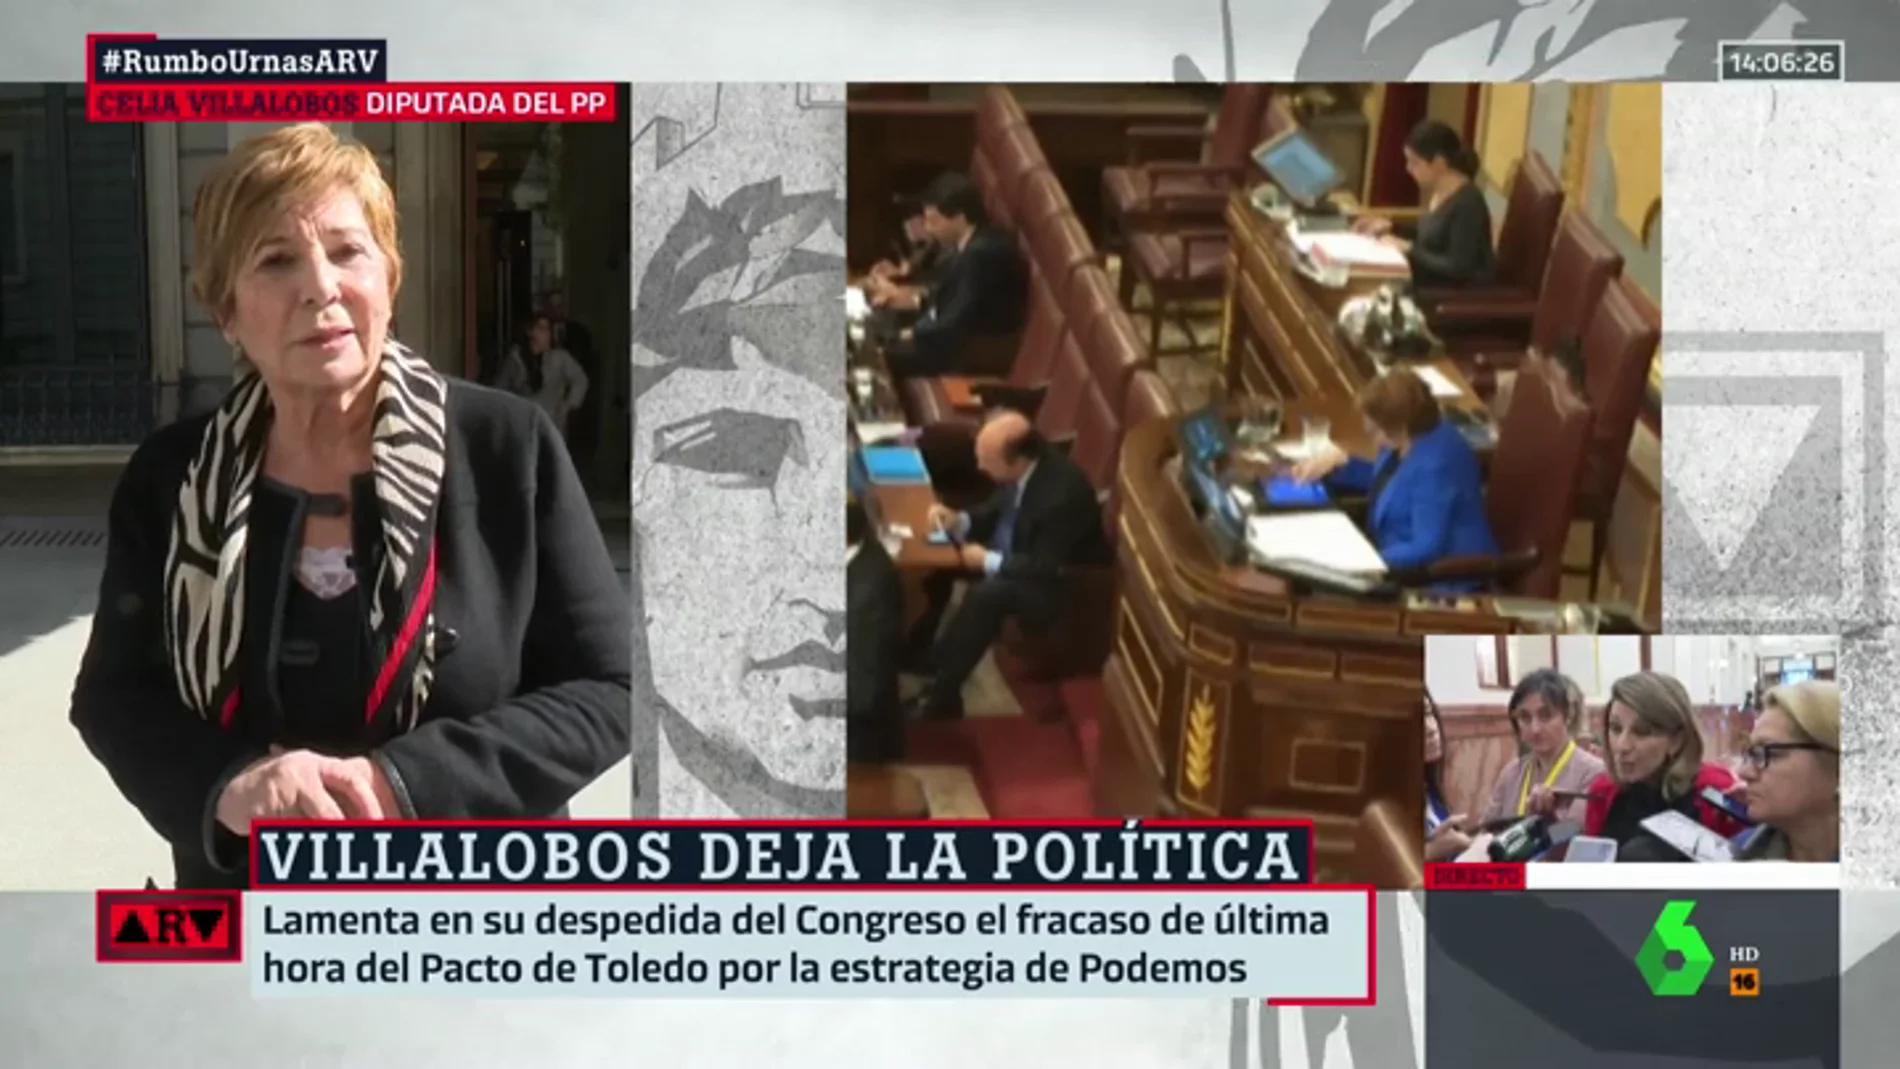 La reflexión de Villalobos tras dejar la política: "He contribuido a centrar mucho el PP; con algún que otro desgarrón"